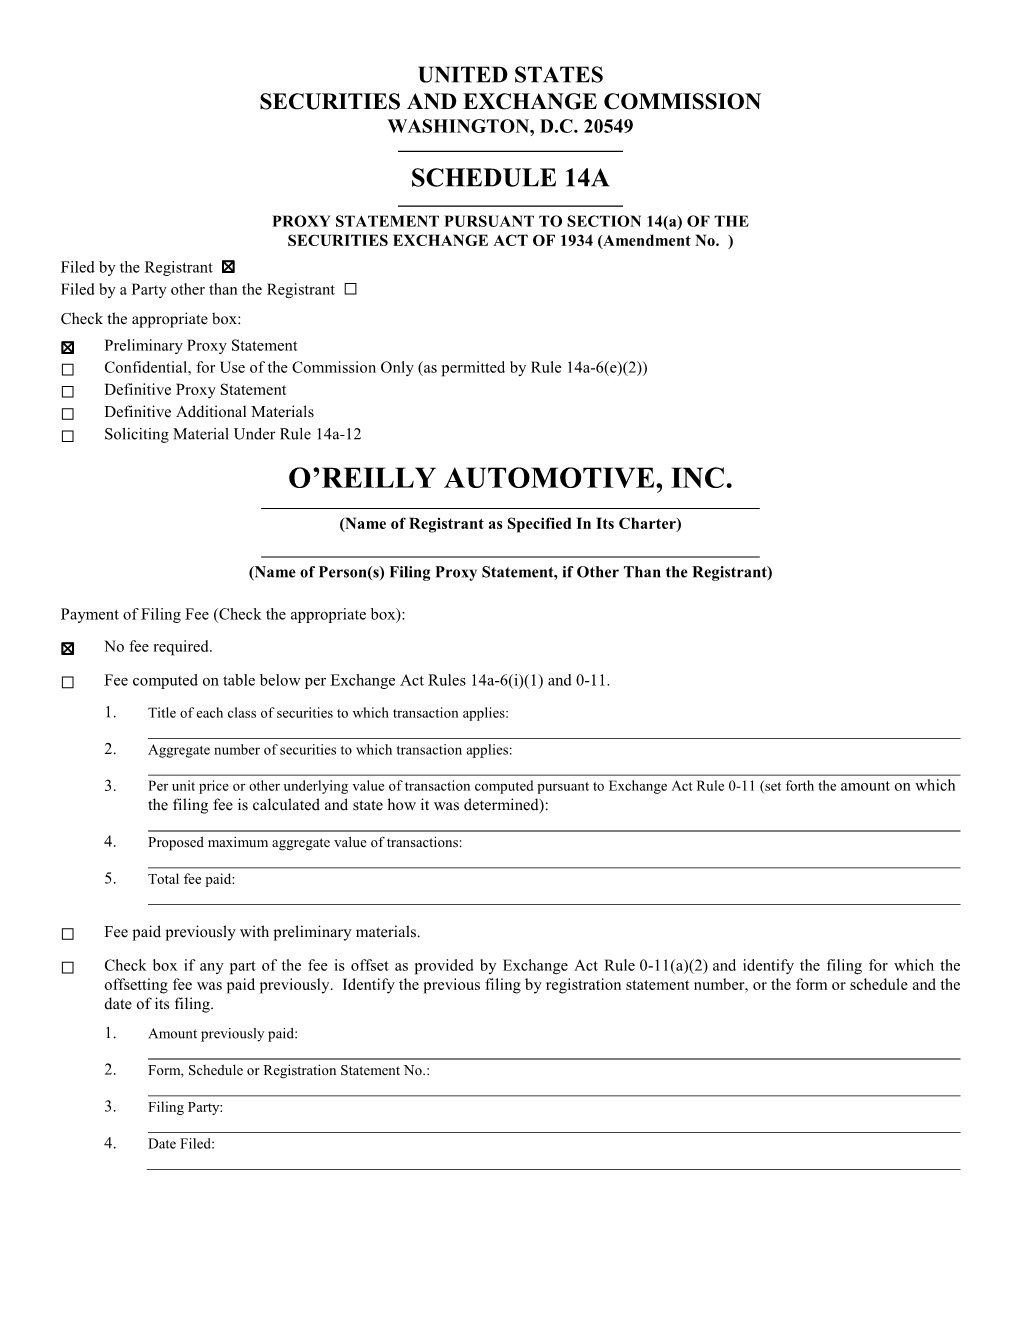 O'reilly Automotive, Inc. 2020 Preliminary Proxy Statement.Pdf